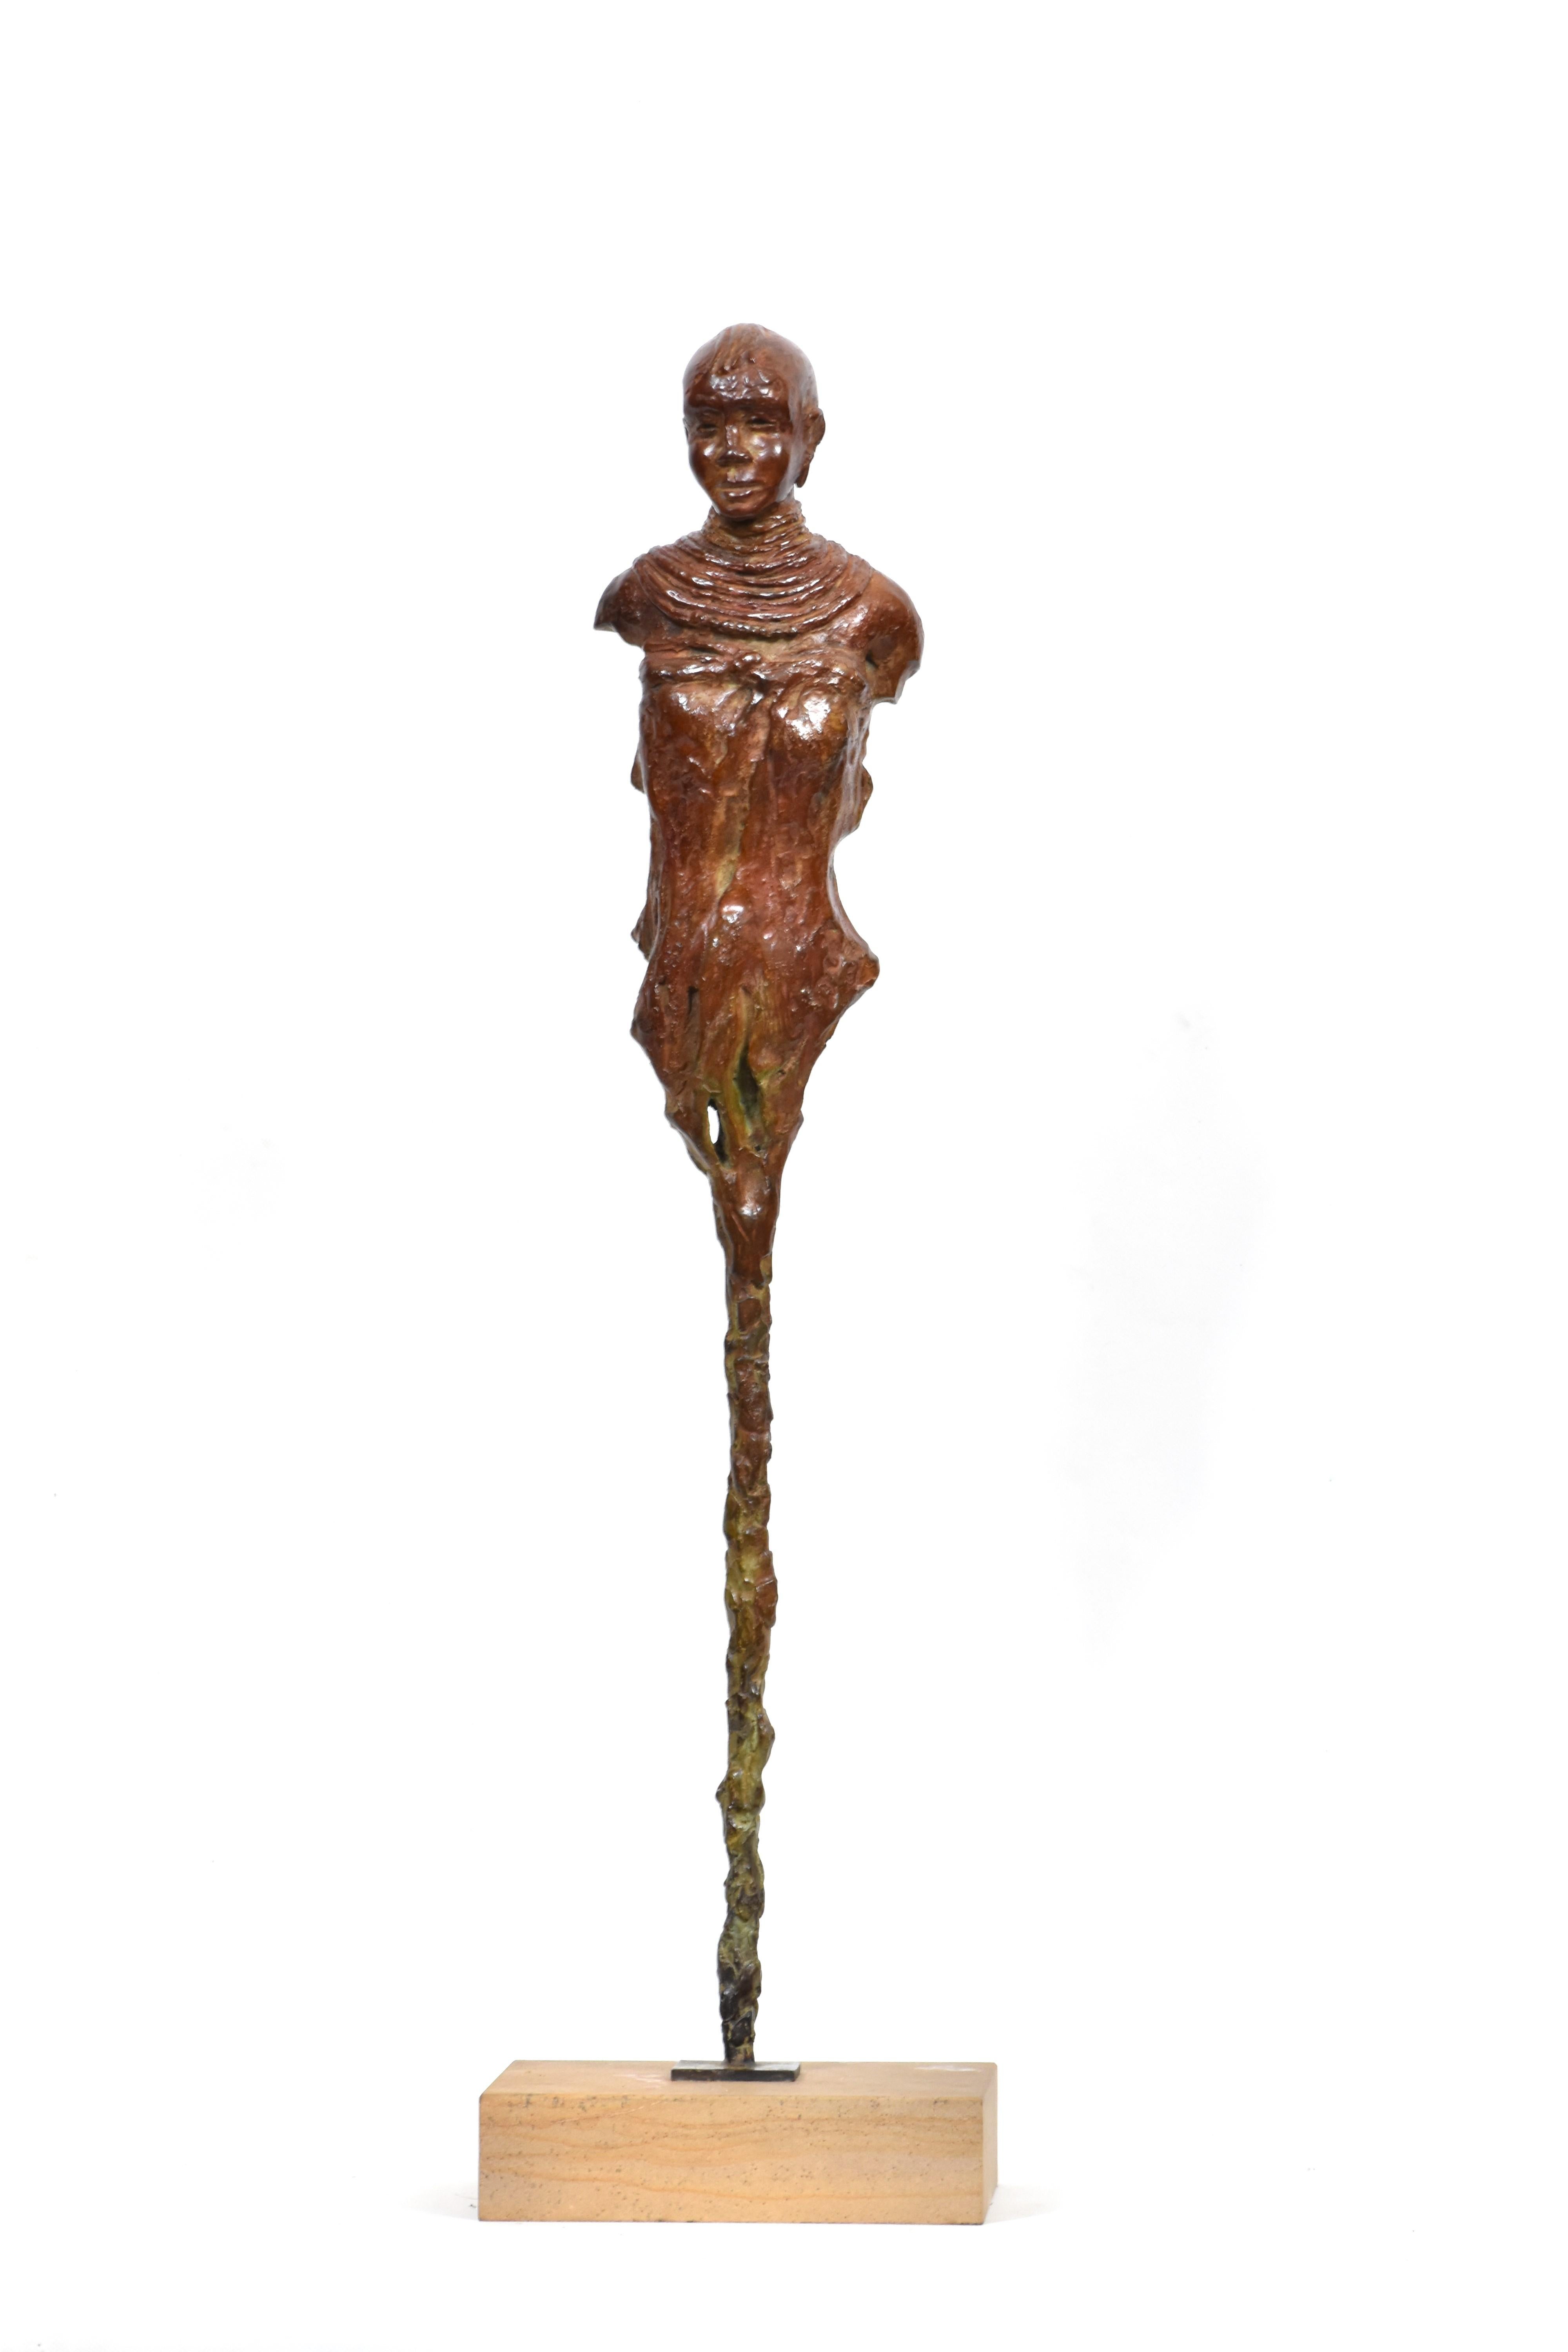 Turkana-Mädchen – Bronzeskulptur eines afrikanischen Stammes, limitierte Auflage – Sculpture von Heinrich Filter